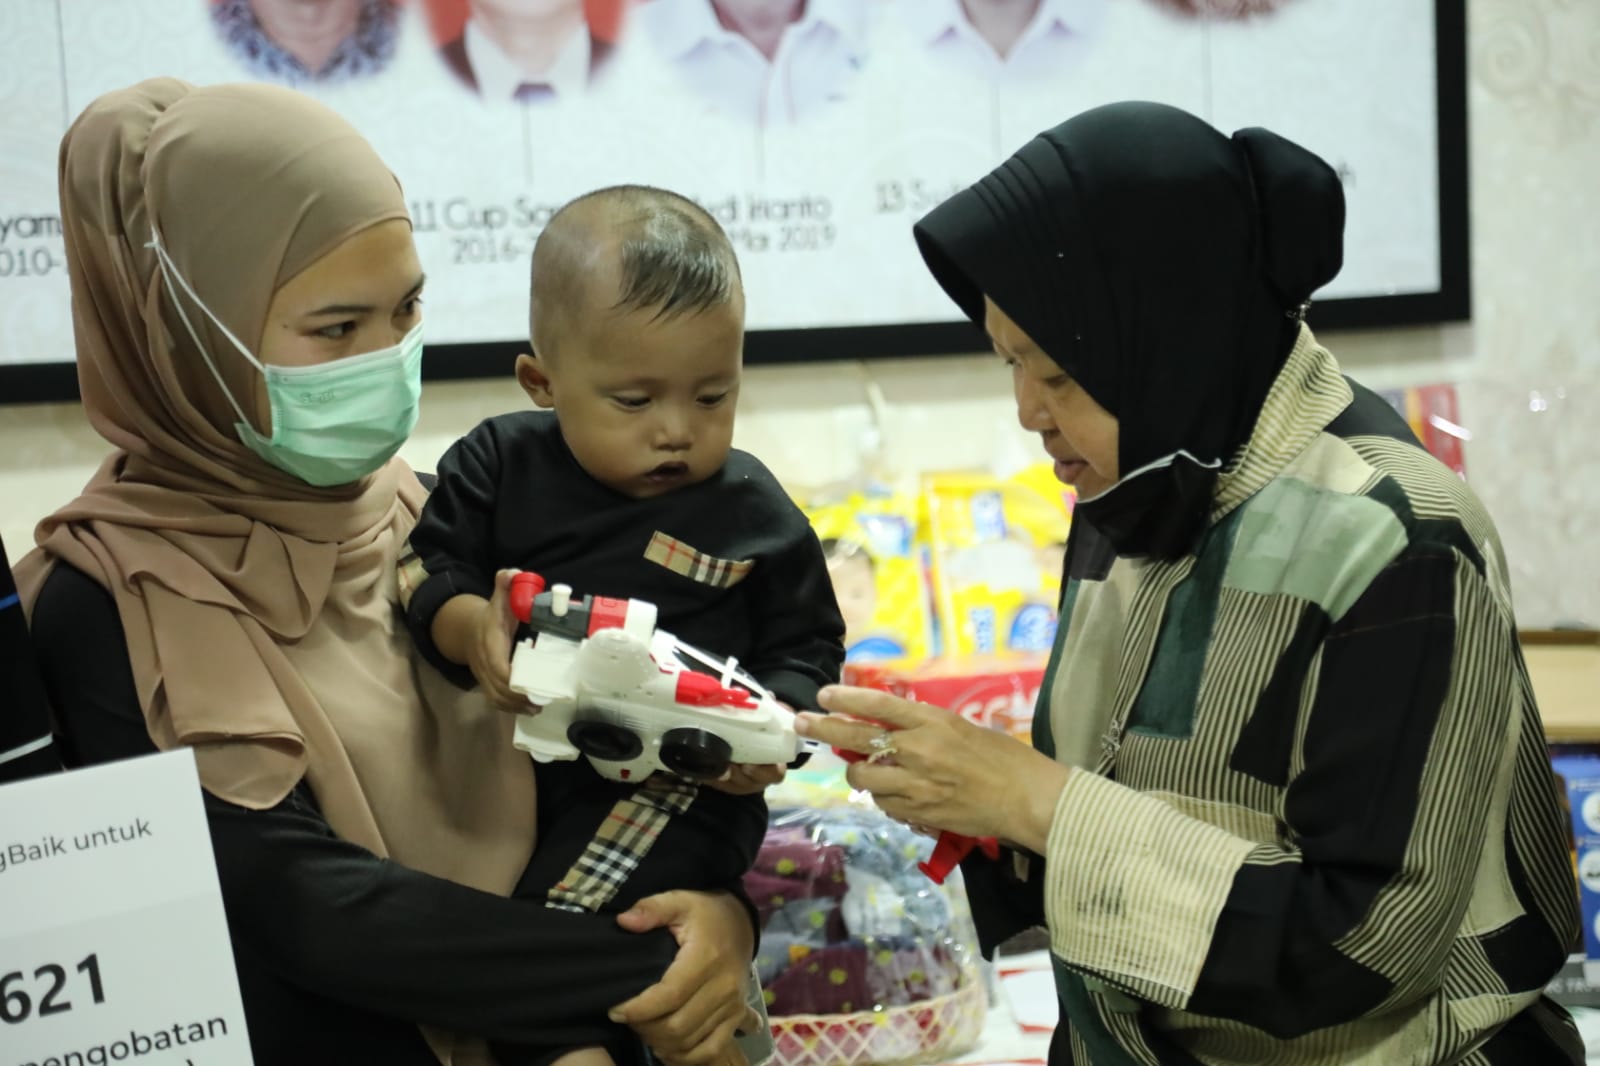 Bersama Anggota Komisi VIII DPRI RI, Mensos Serahkan Bantuan Dukungan Pengobatan kepada Tiga Anak di Riau